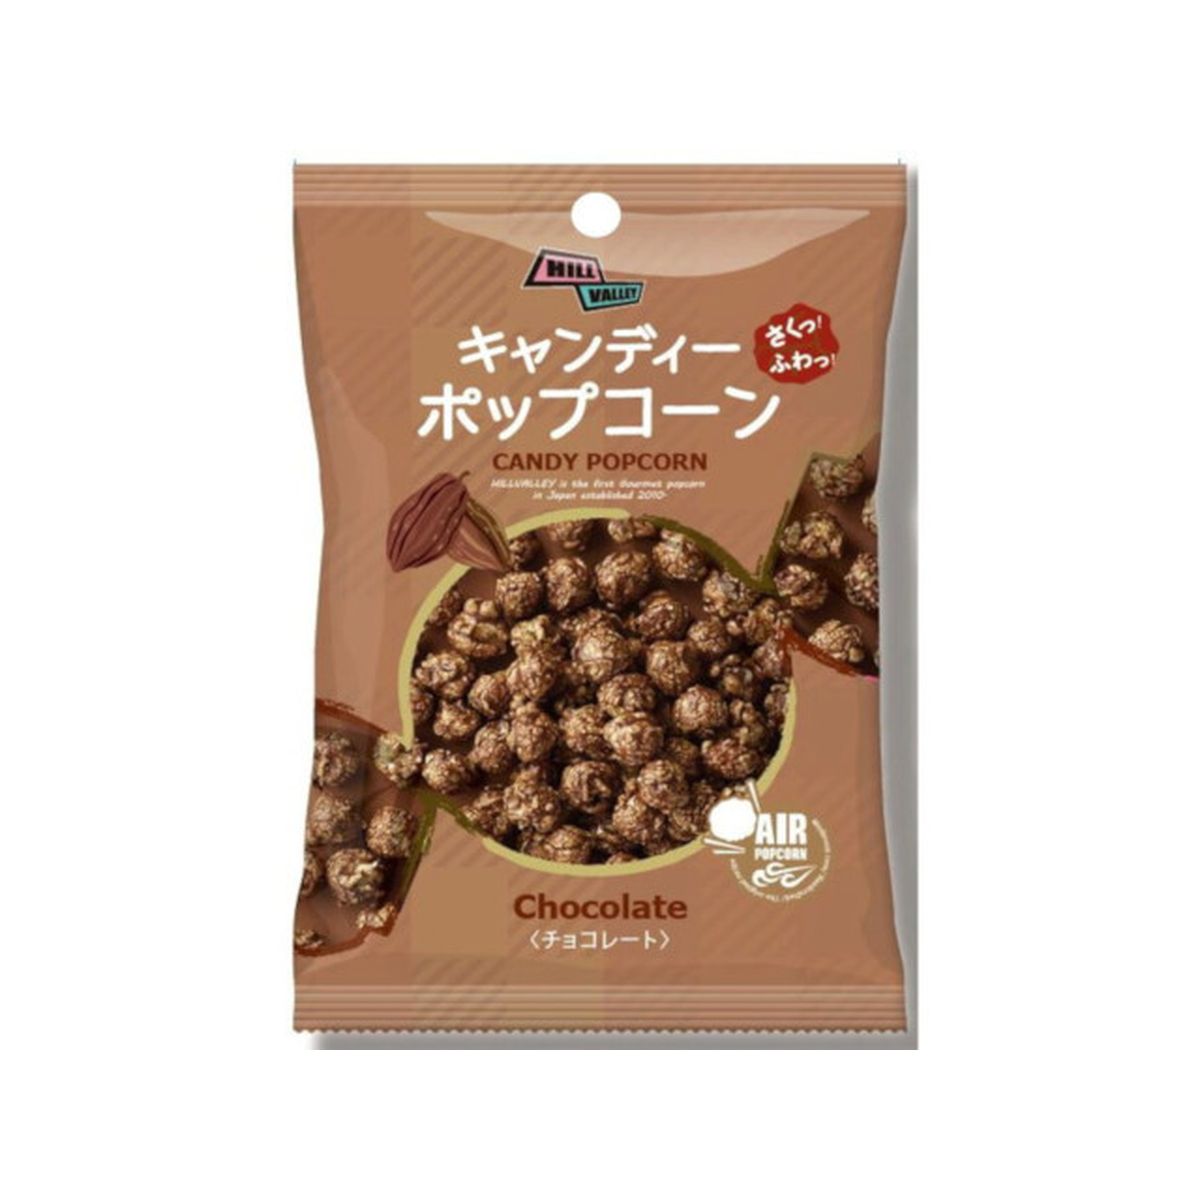 【12個入り】ヒルバレー キャンディーポップコーン チョコレート 50g